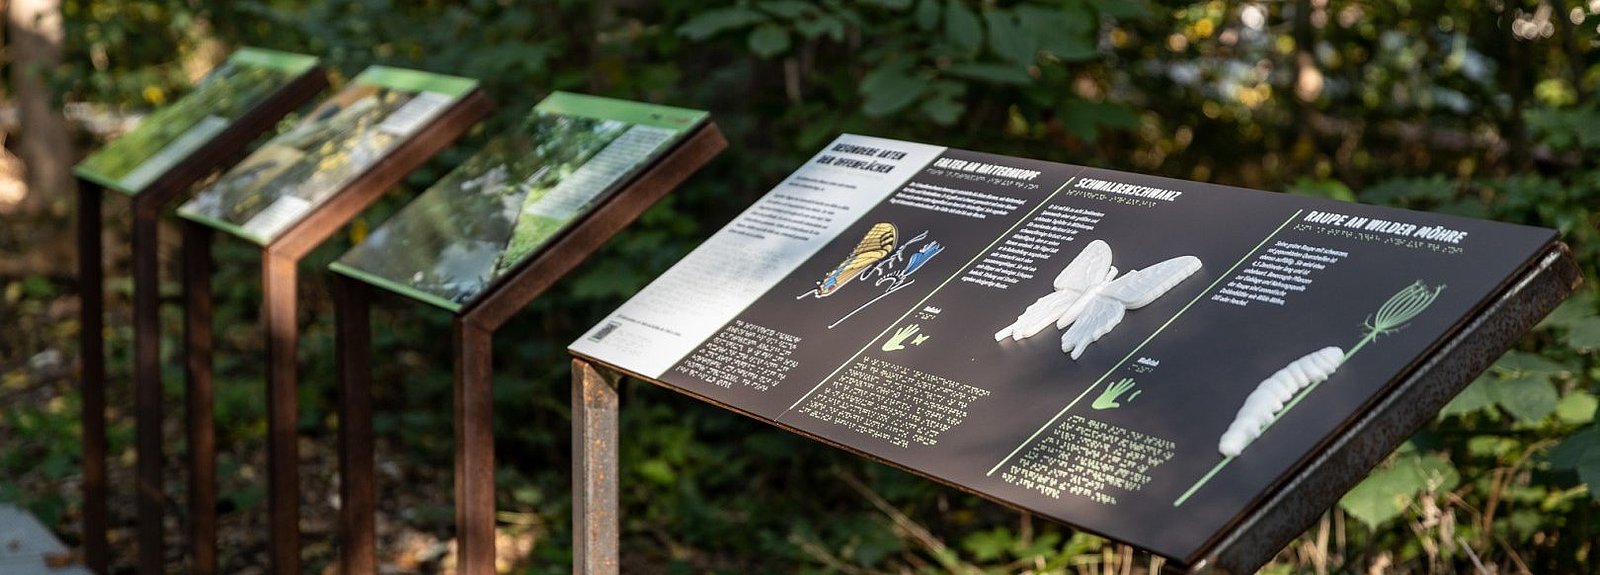 Taktile Ausstellungstafeln der Ausstellung "Bahnbrechende Natur" im Natur-Park Schöneberger Südgelände